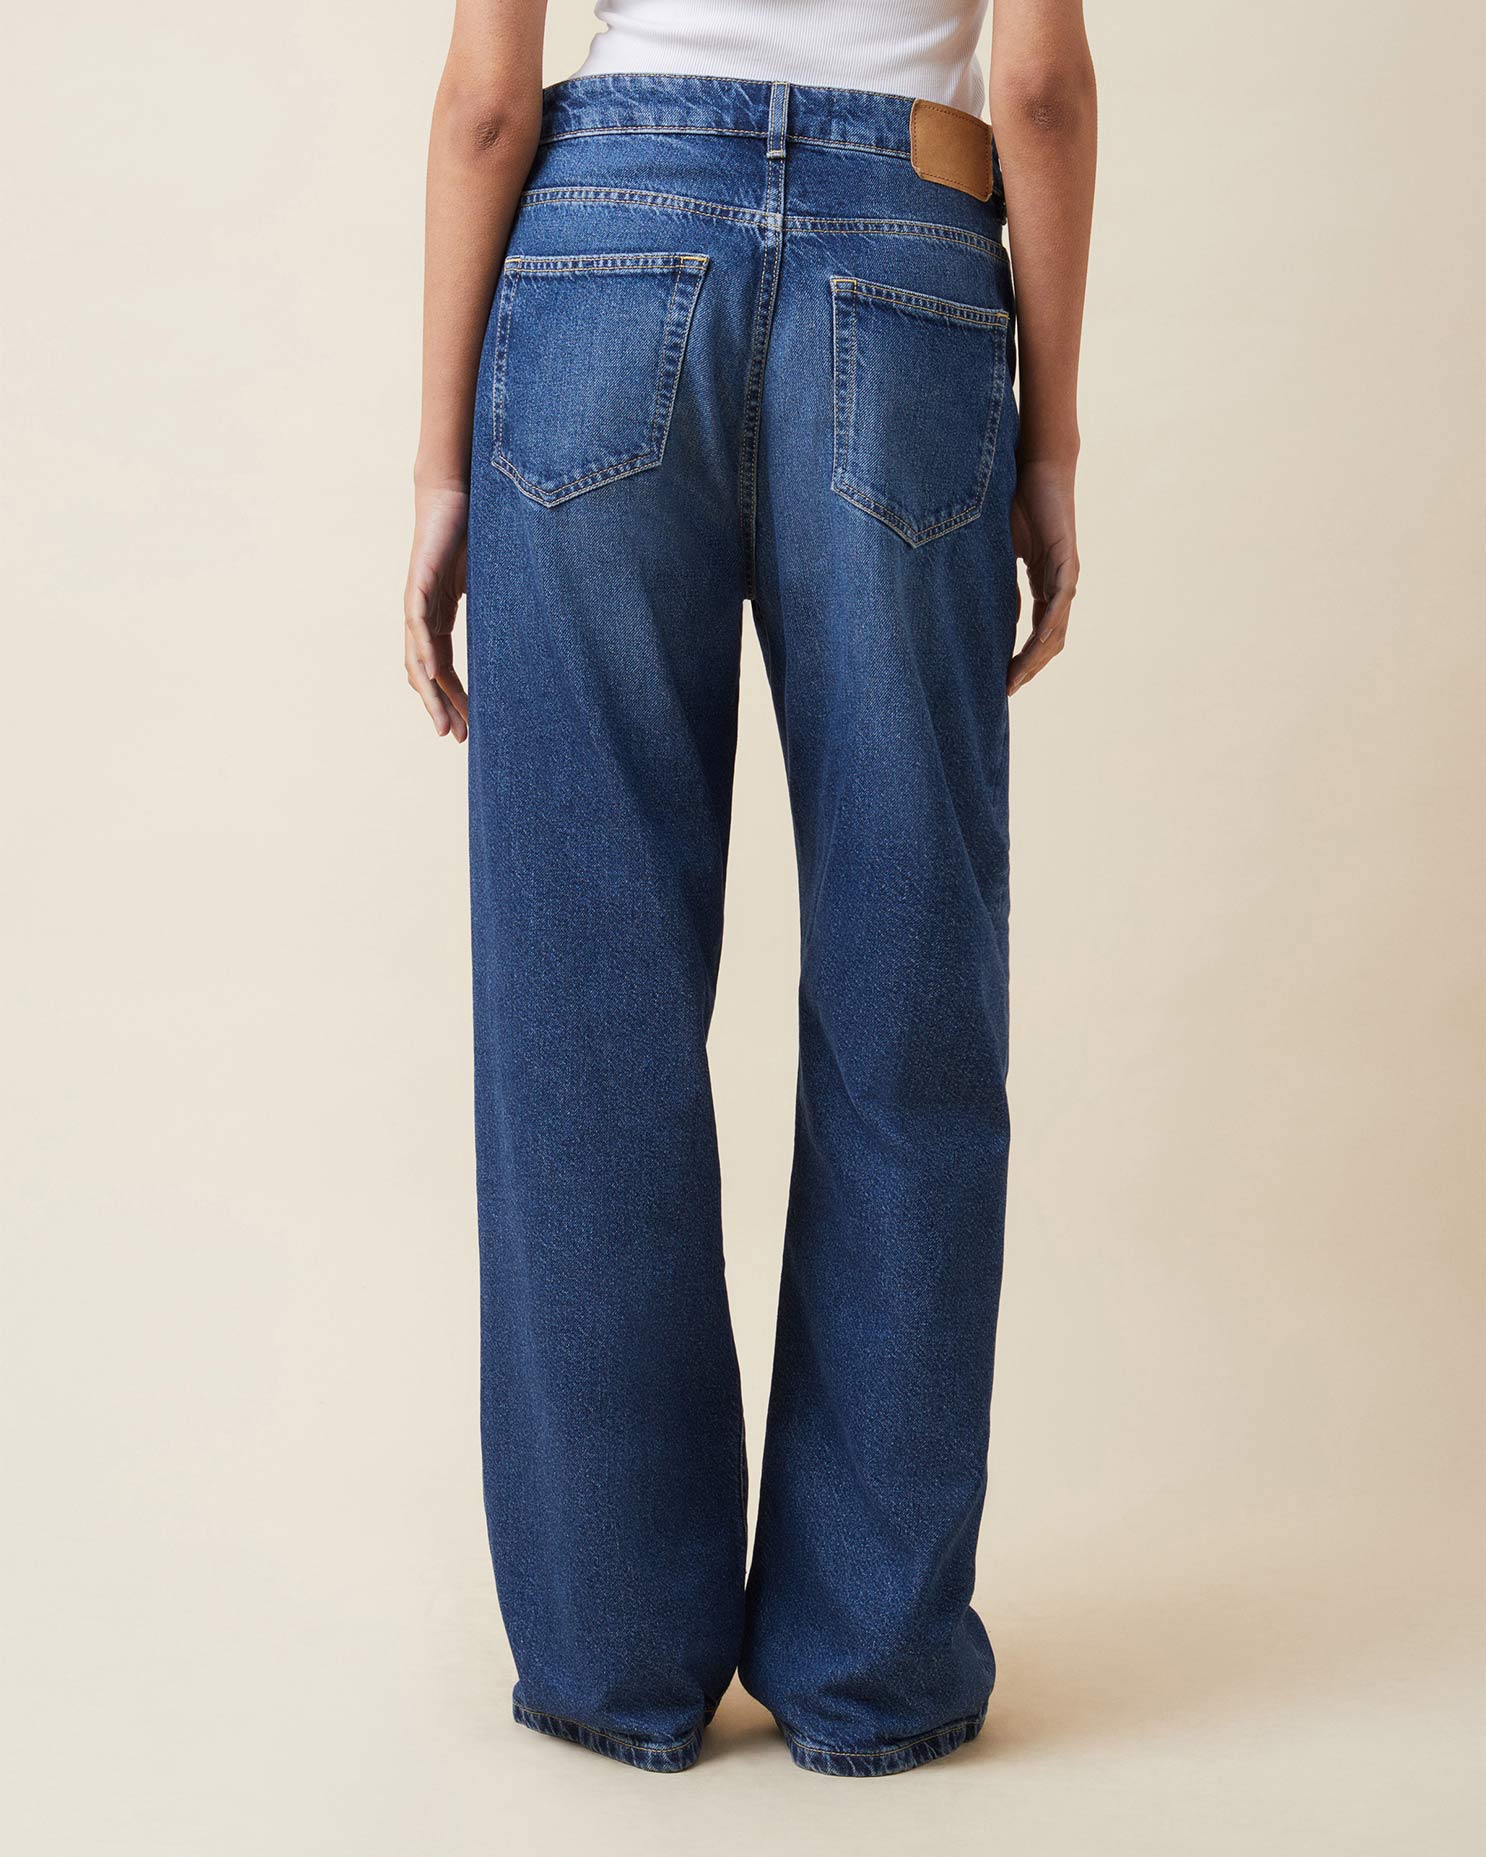 Belem Vintage 62 Jeans